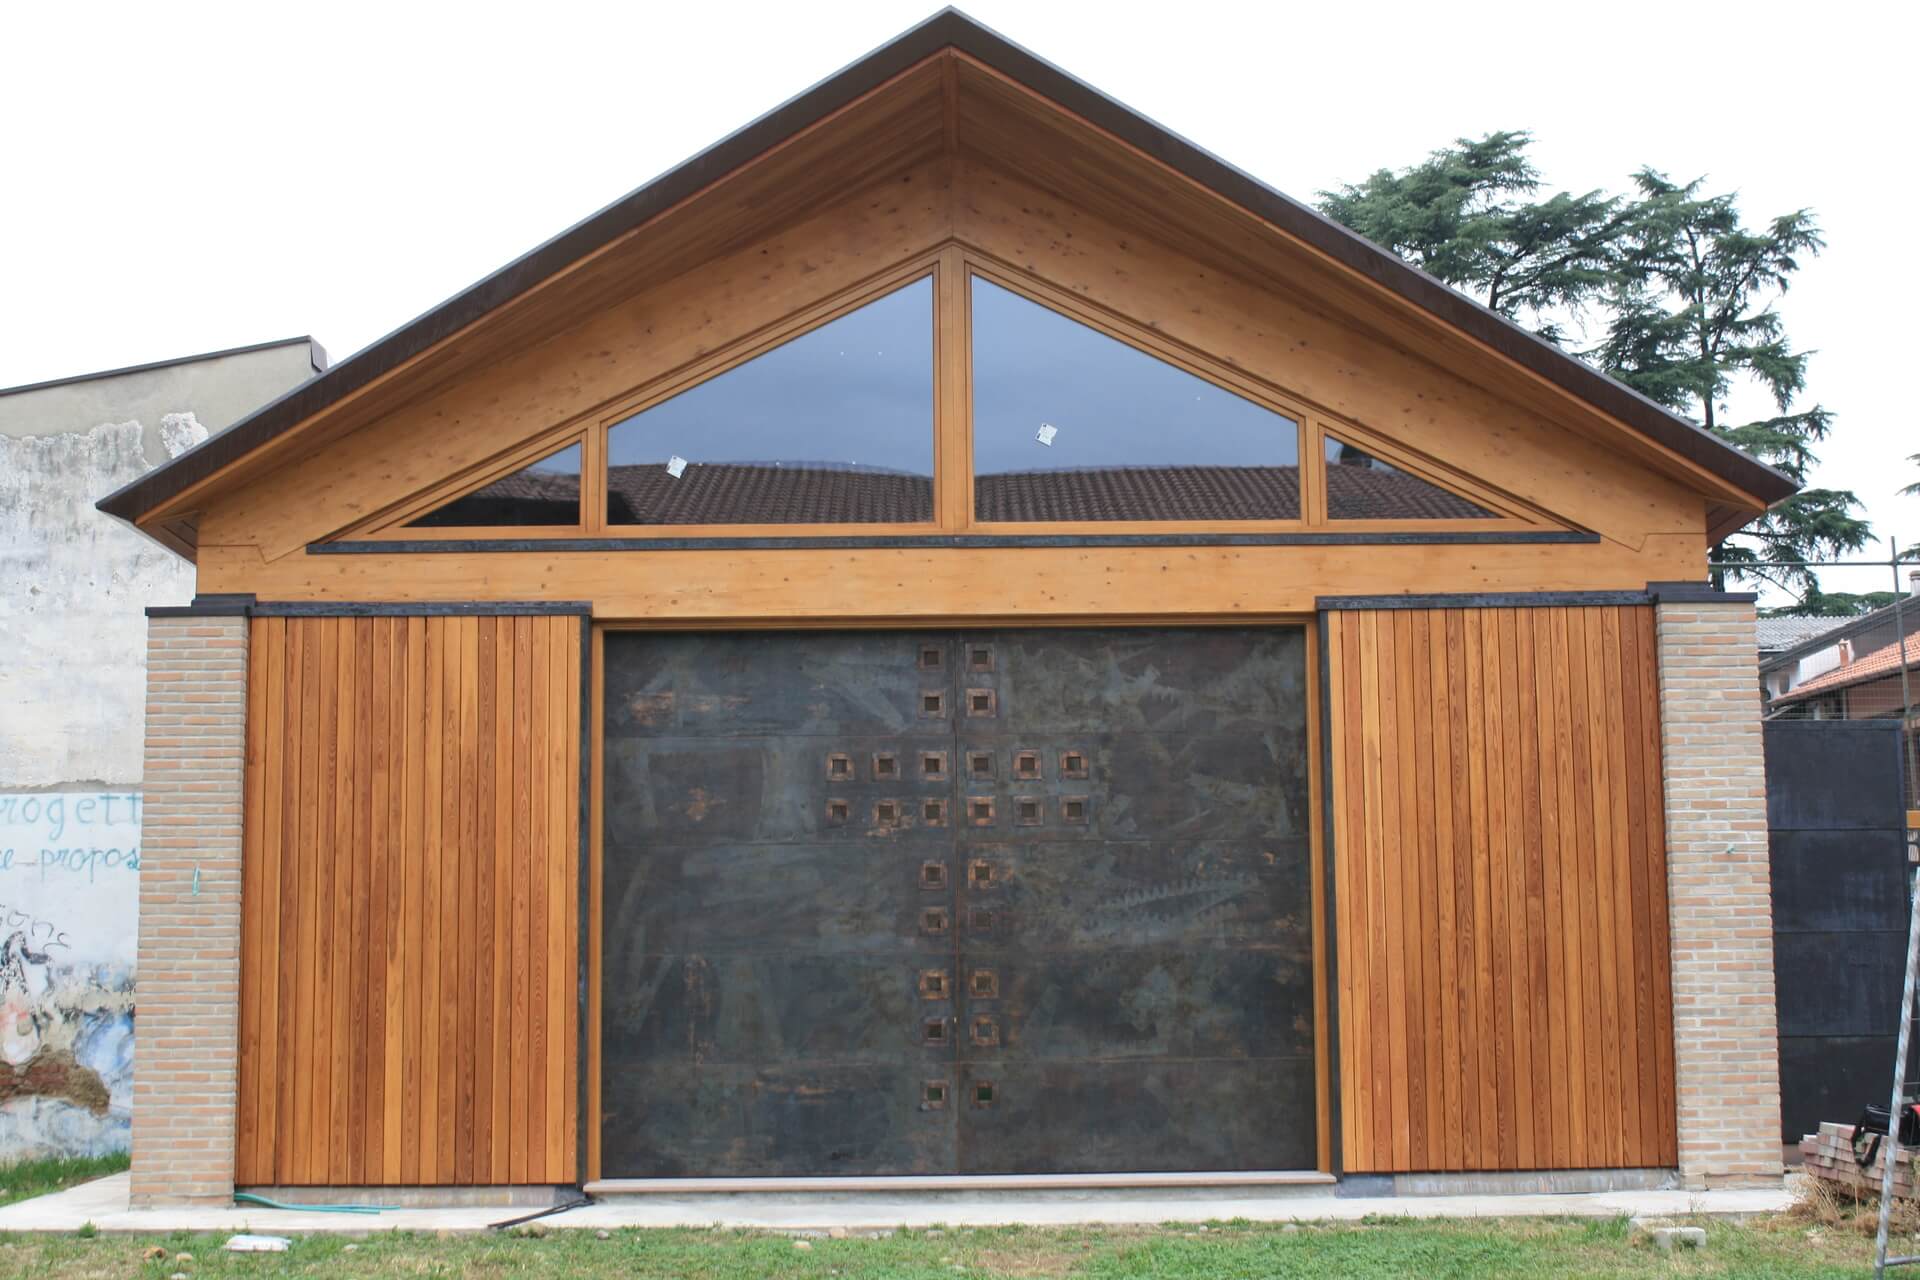 Chiesa con struttura in legno